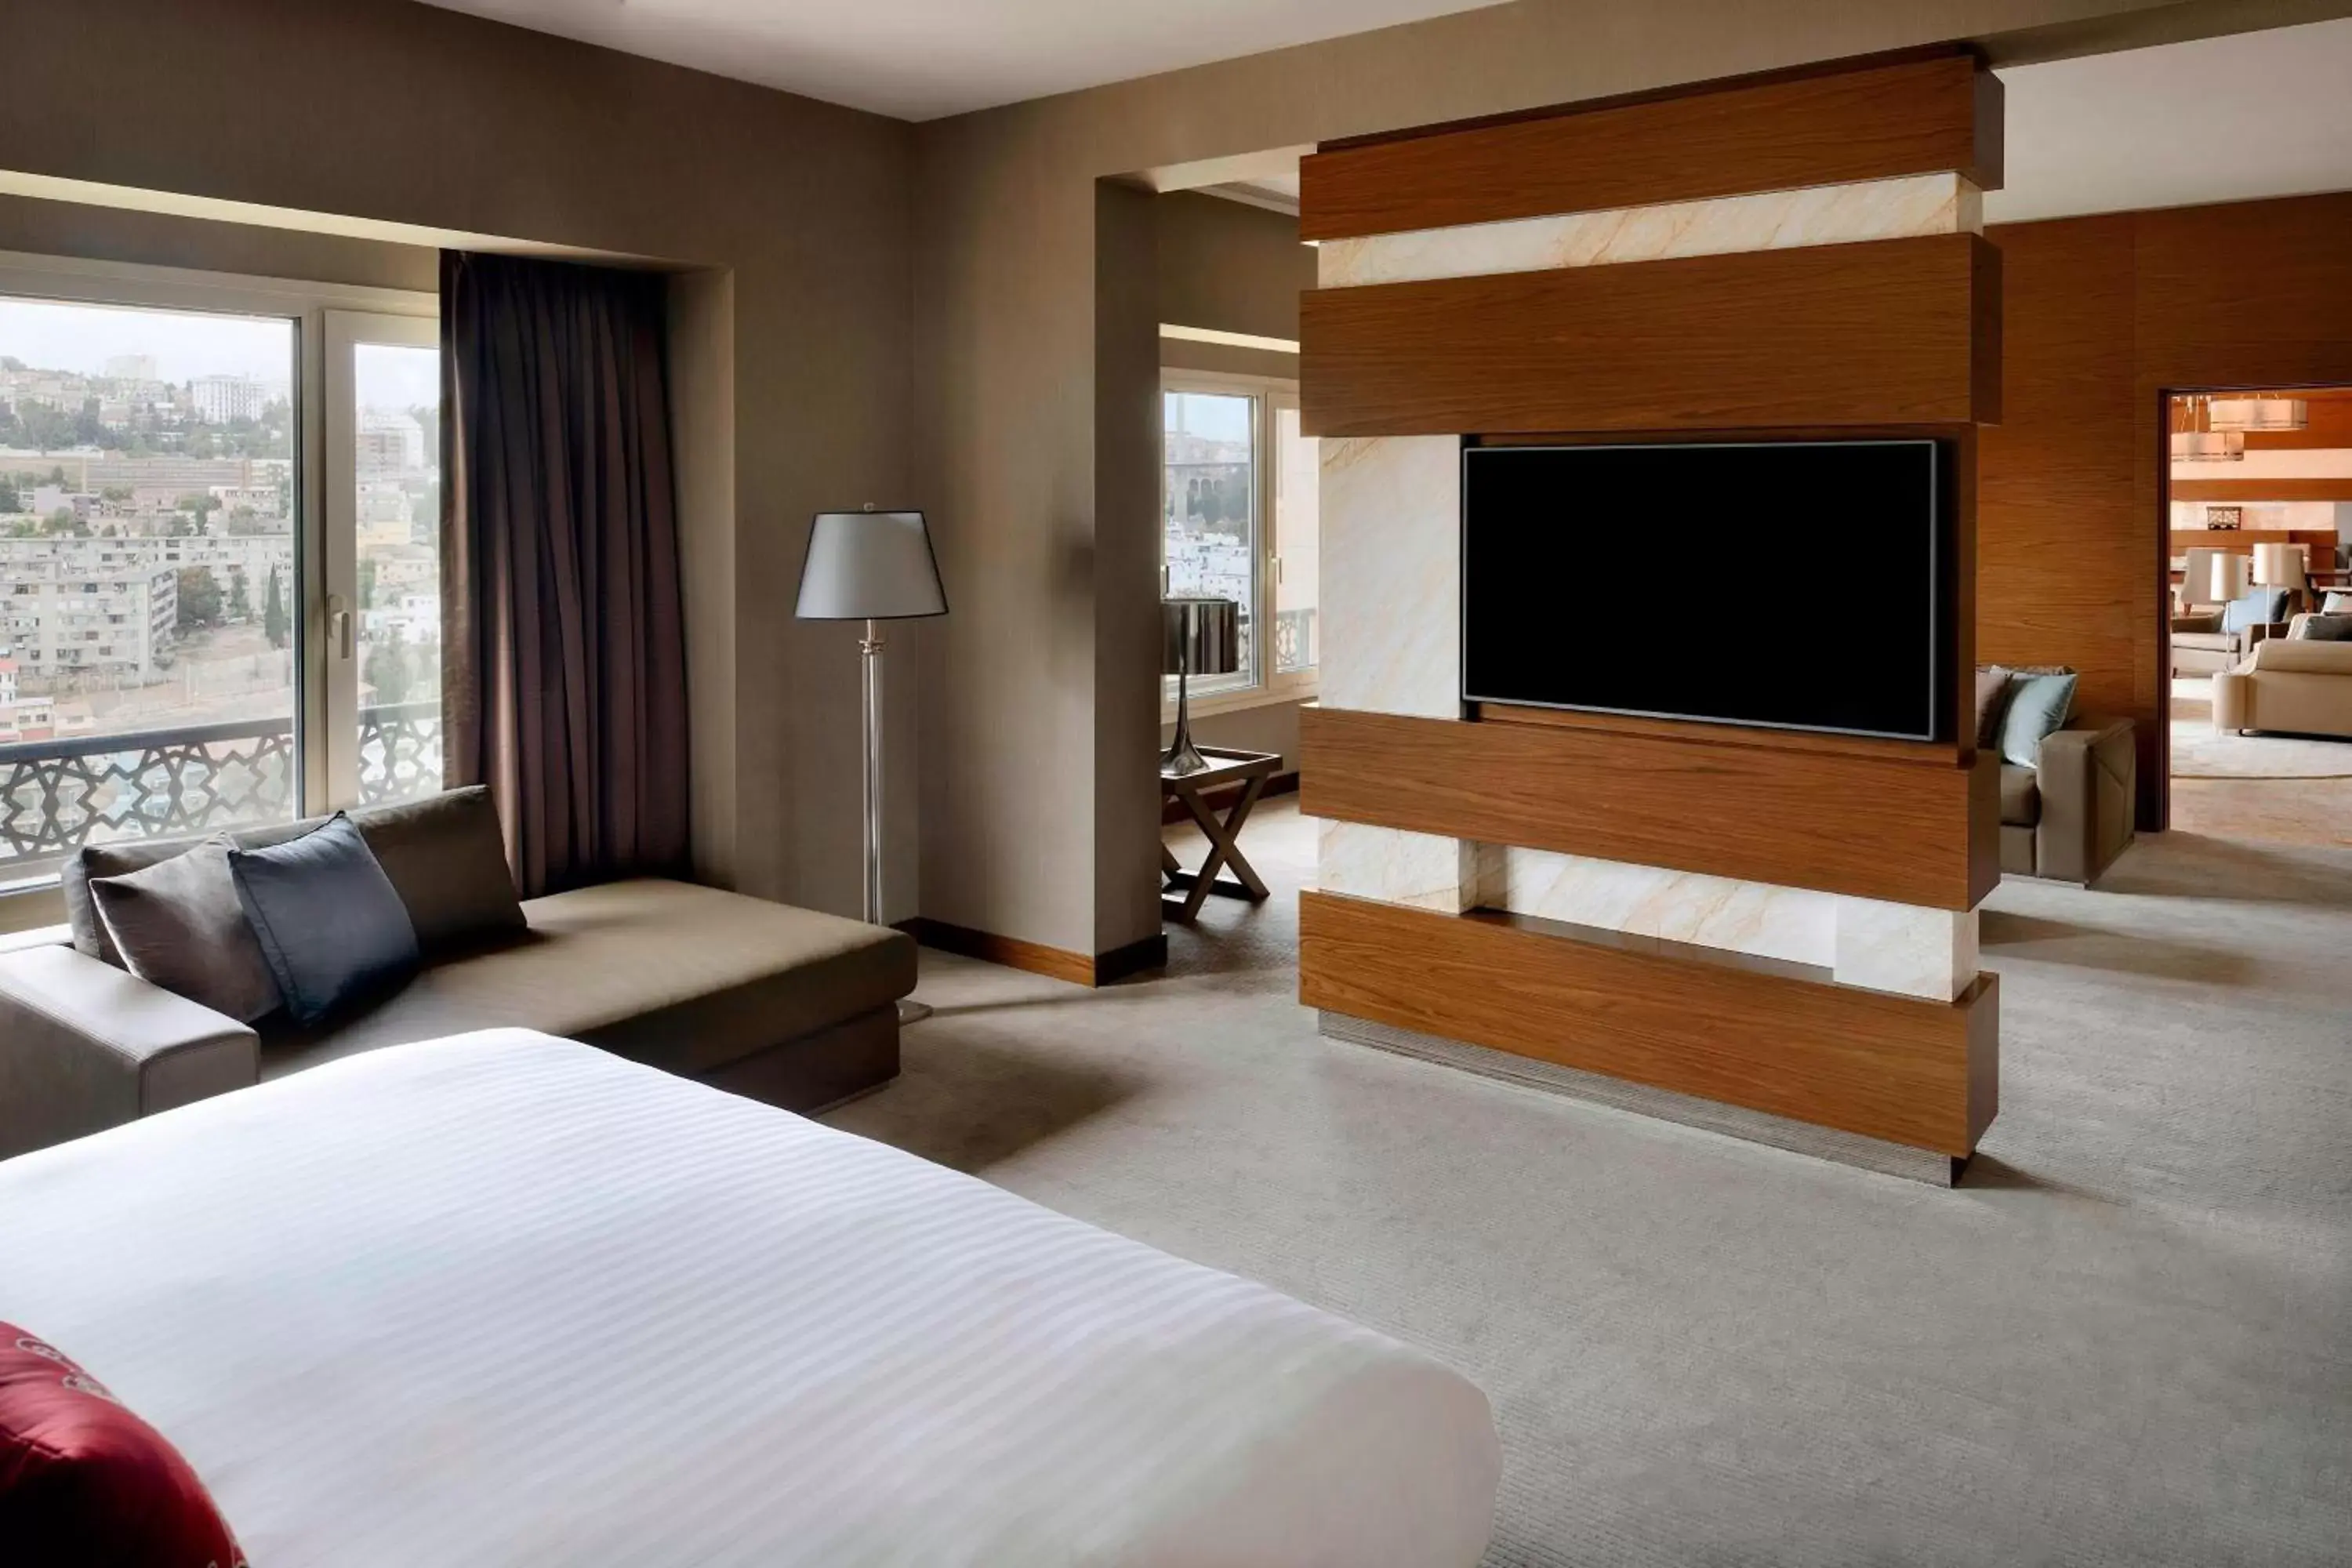 Bedroom, TV/Entertainment Center in Constantine Marriott Hotel